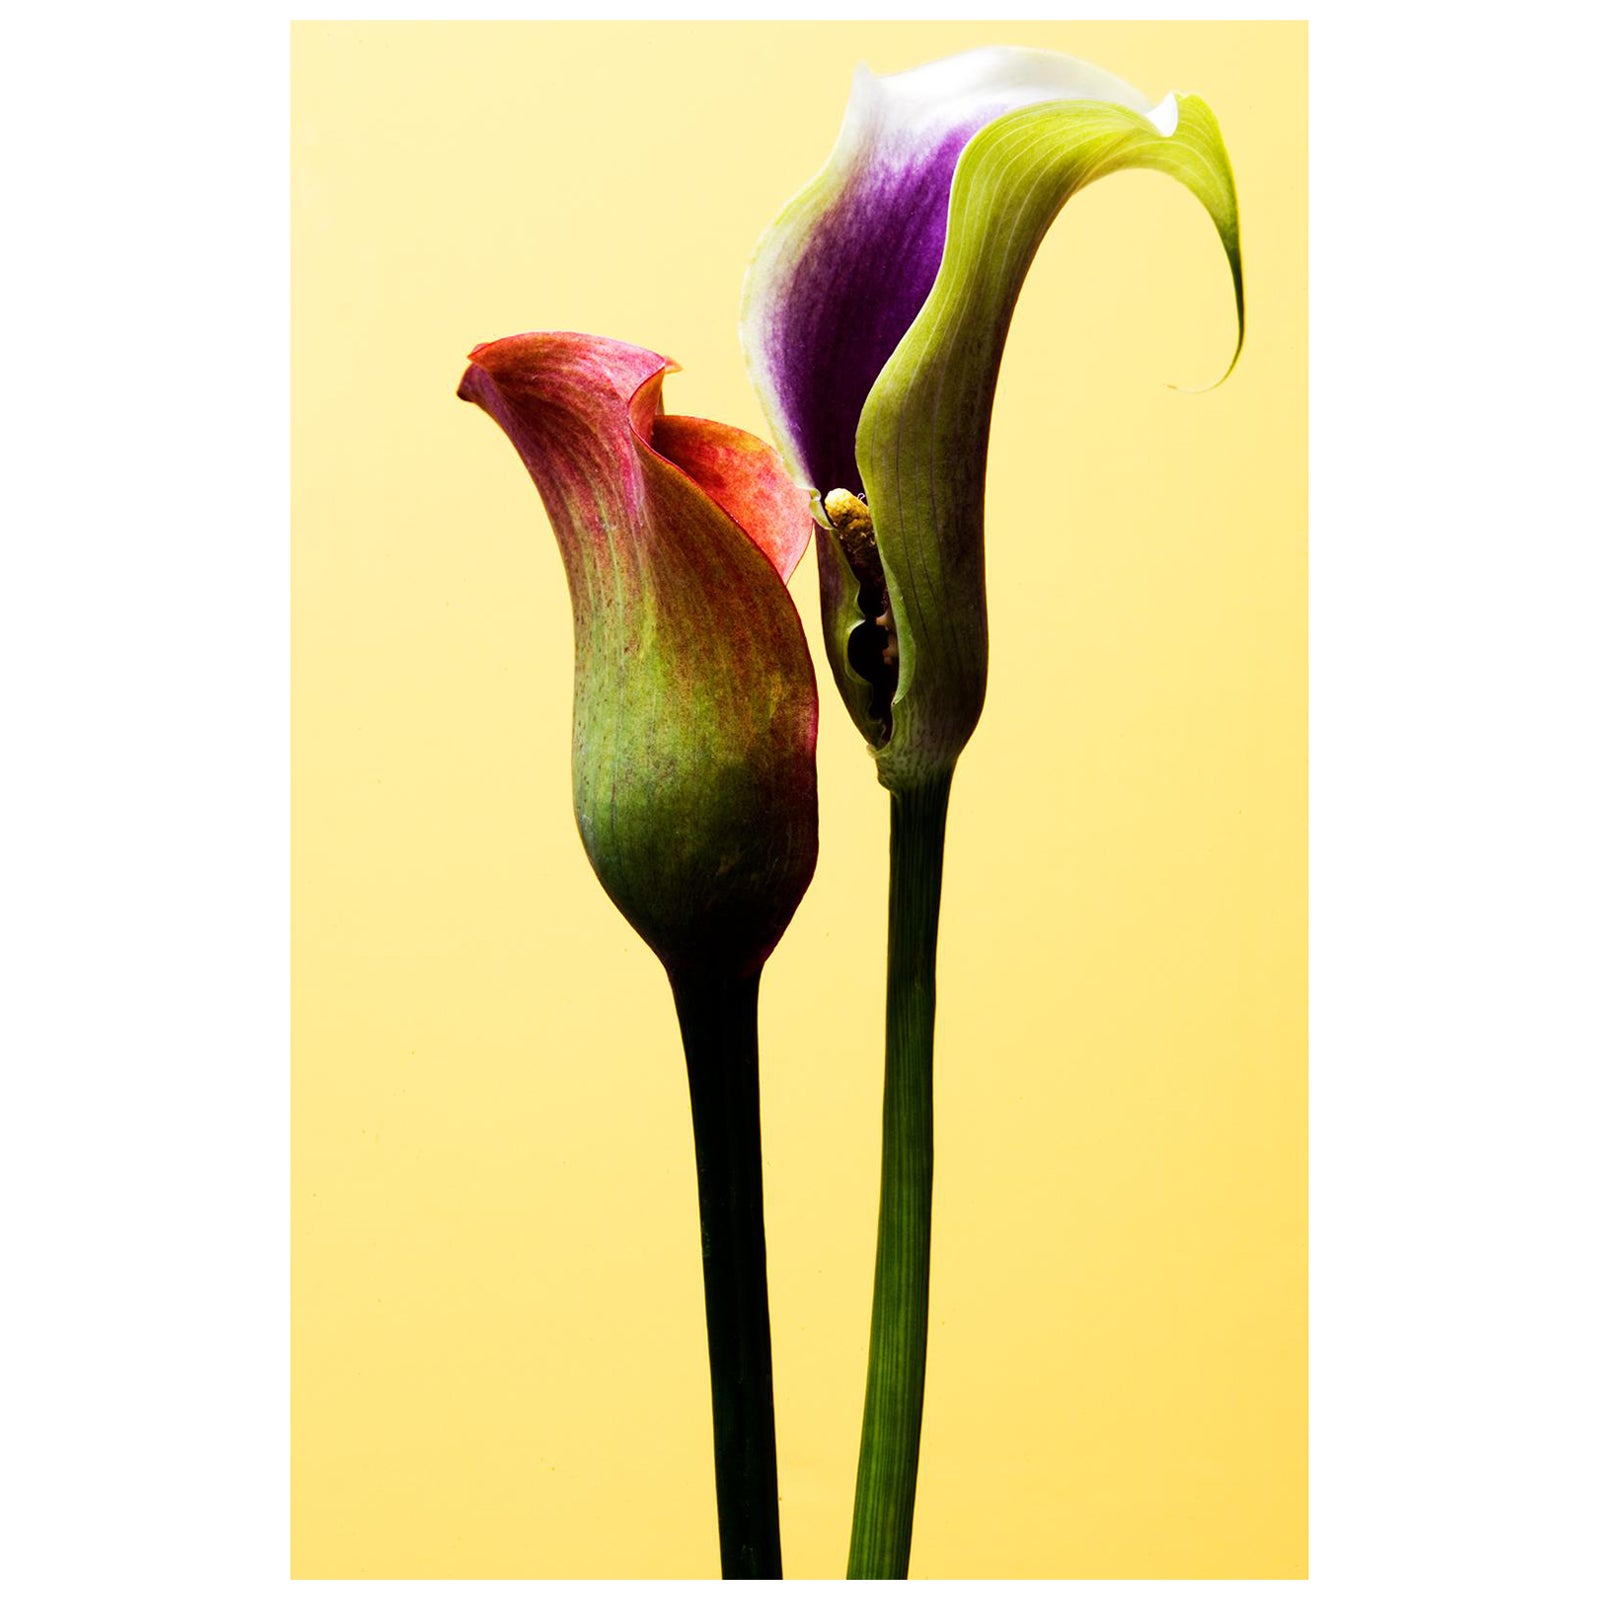 Ian Sanderson Still-Life Photograph – Blumen kostenlose Lieferung – limitierter signierter zeitgenössischer Druck, Naturfoto, Gelb